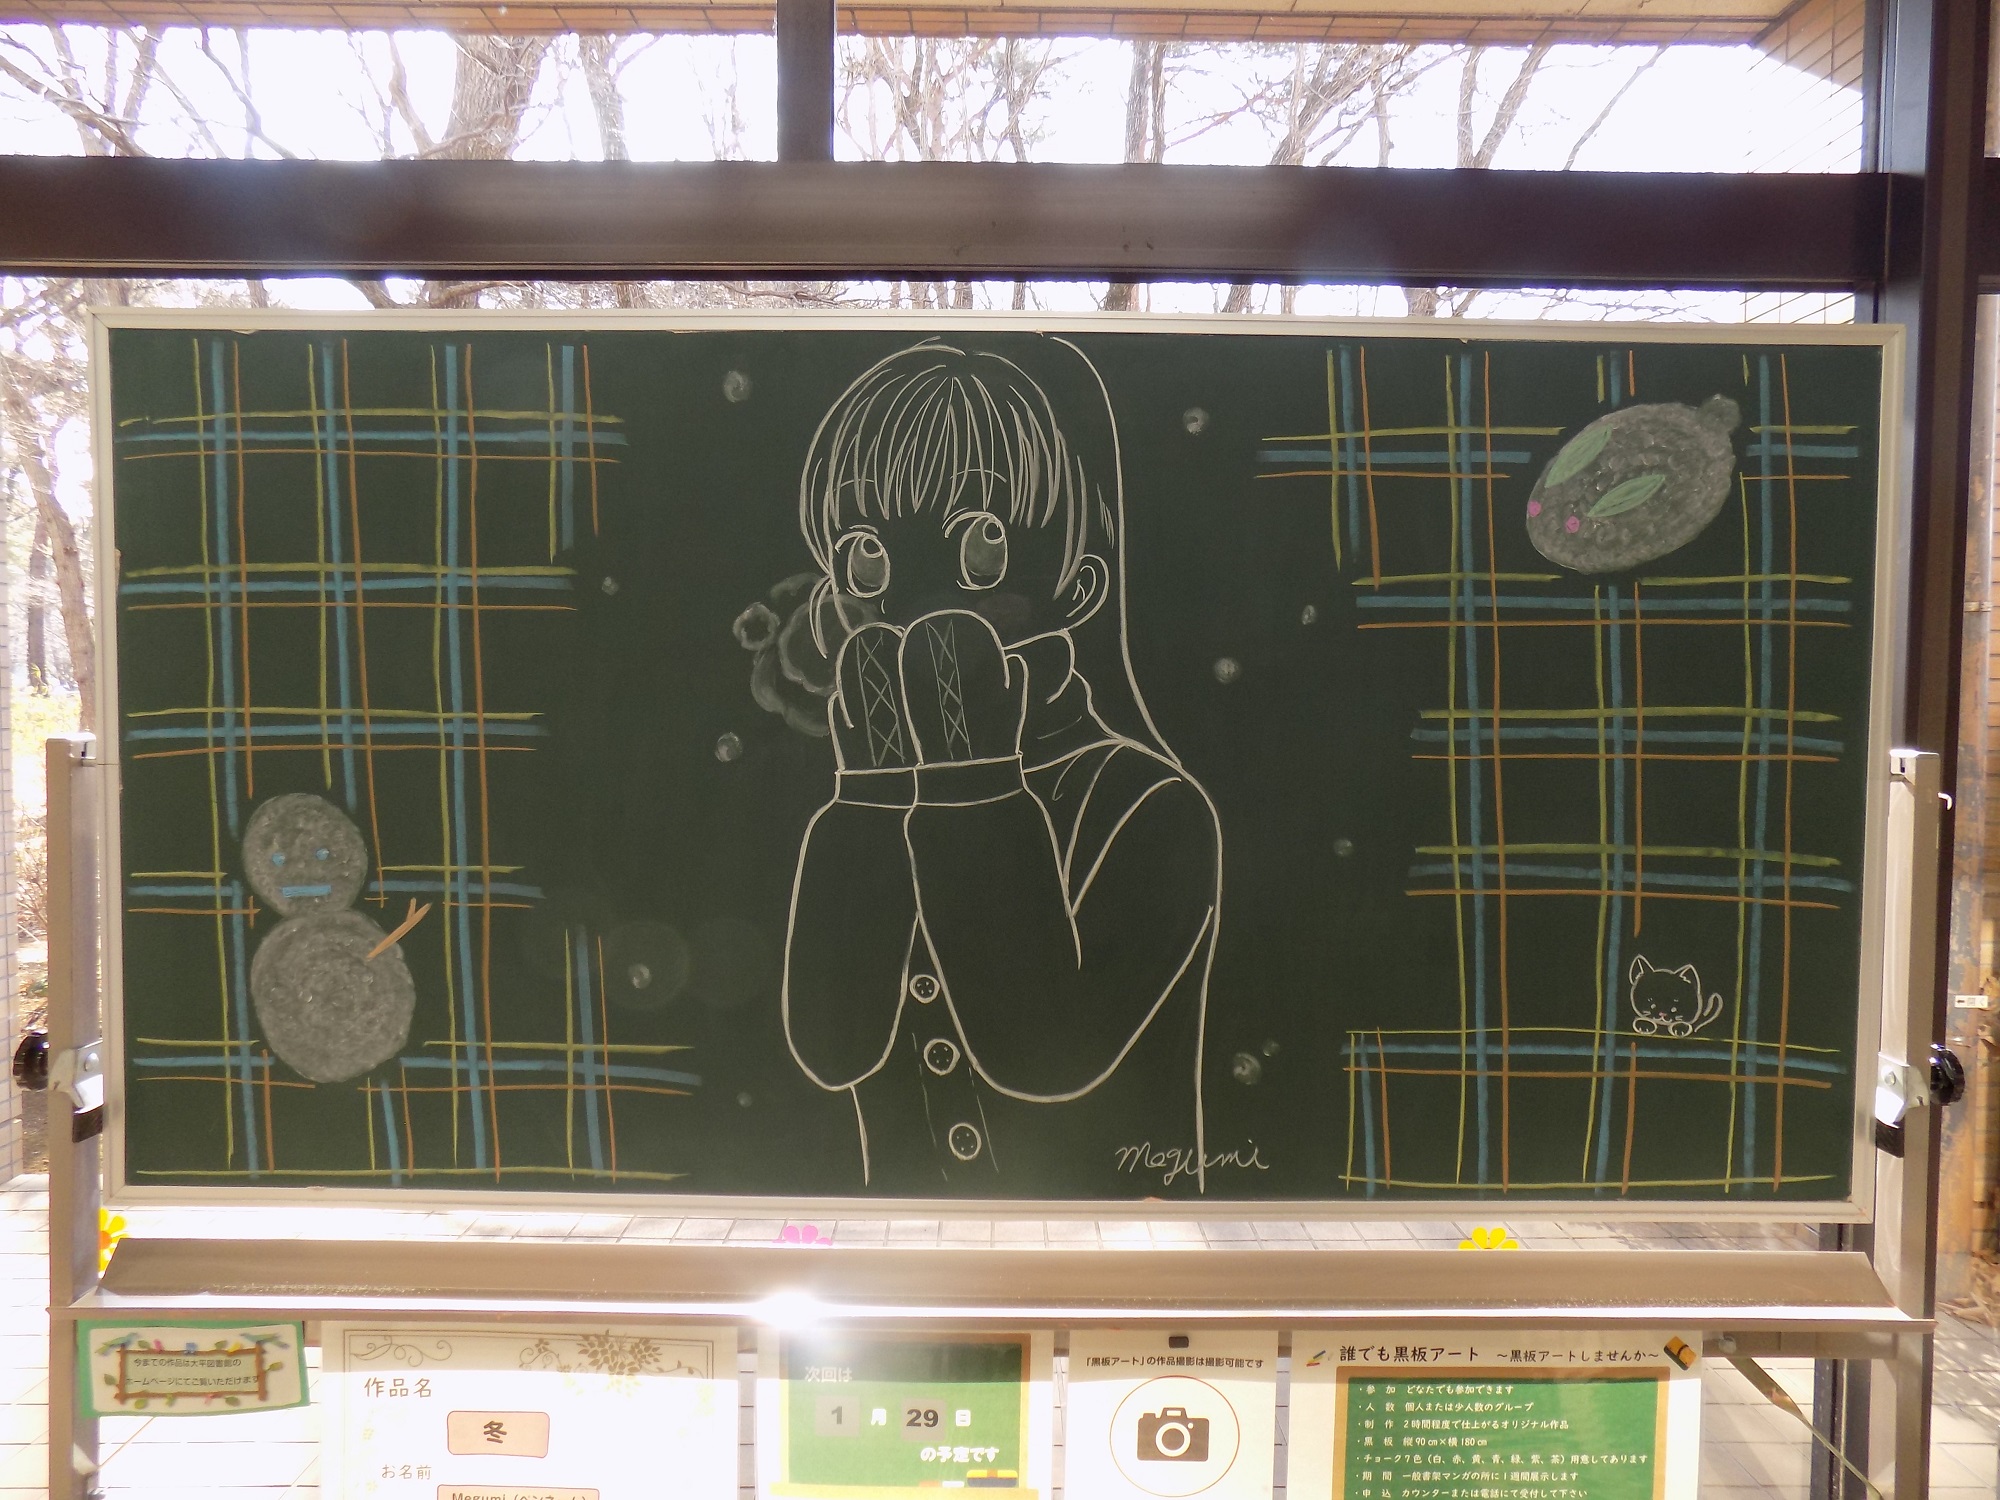 「冬／Megumi様」黒板アート作品の写真